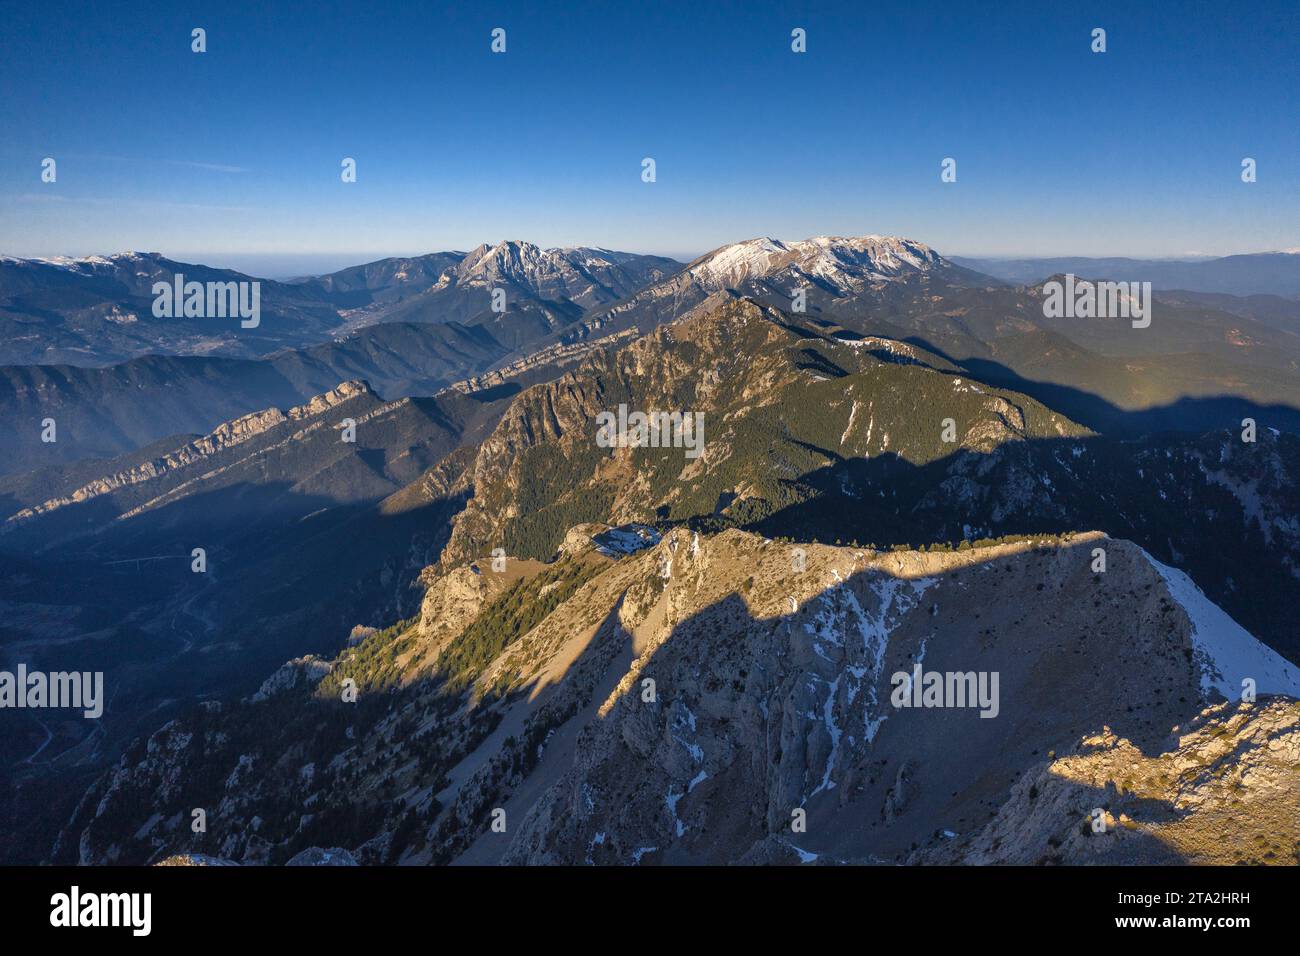 Vista aerea della cima innevata della Tosa d'Alp in una mattinata d'inverno (Cerdanya, Catalogna, Spagna, Pirenei) ESP: Vista aérea de la cima de la Tosa Foto Stock